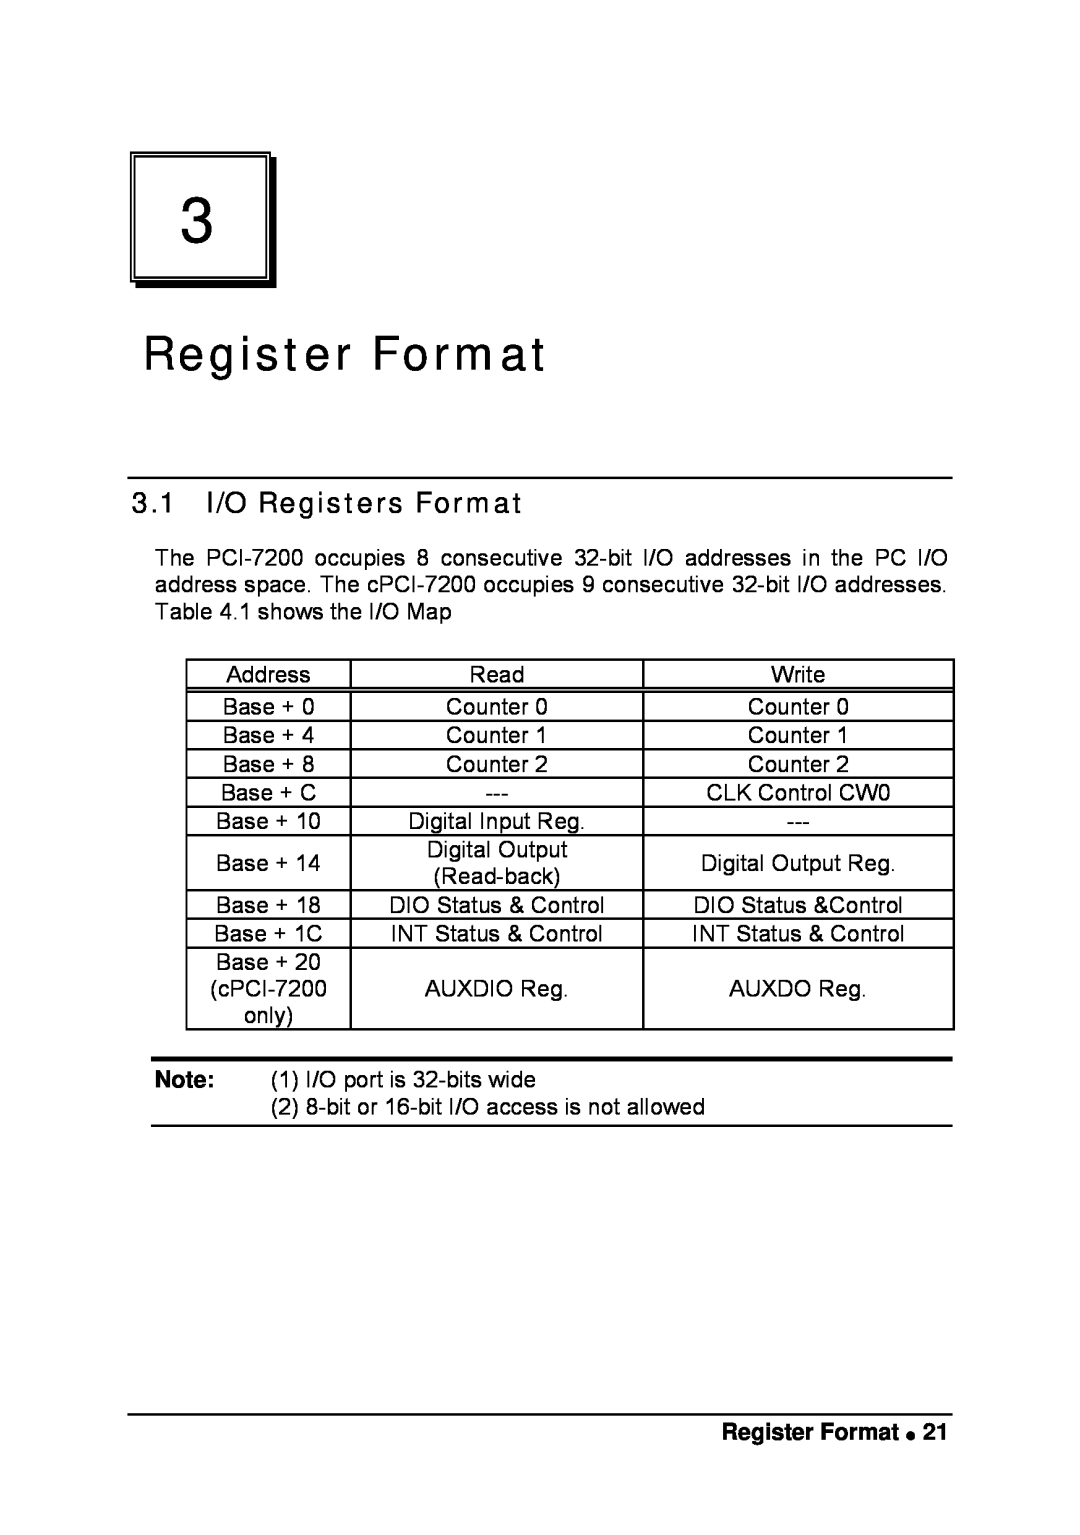 Intel LPCI-7200S manual Register Format, 3.1 I/O Registers Format 